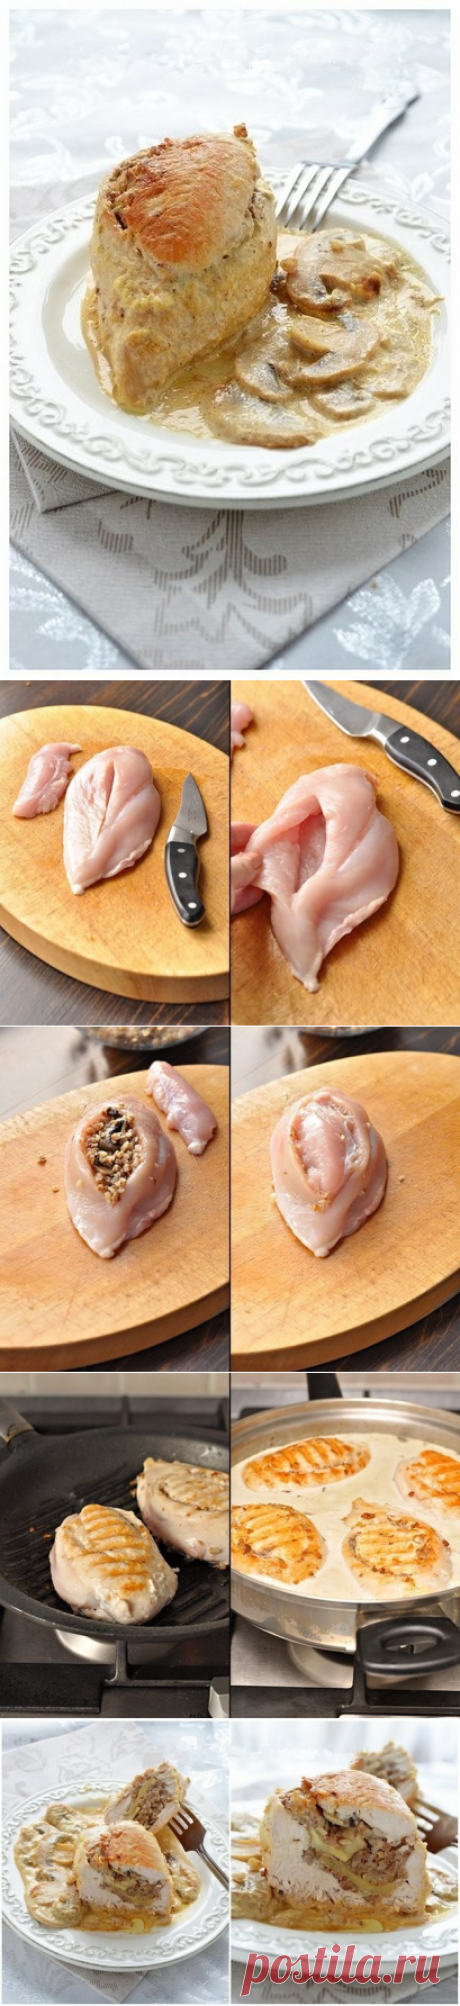 Как приготовить куриные грудки фаршированные гречкой и шампиньонами, тушенные в сливочно-грибном соусе.  - рецепт, ингридиенты и фотографии